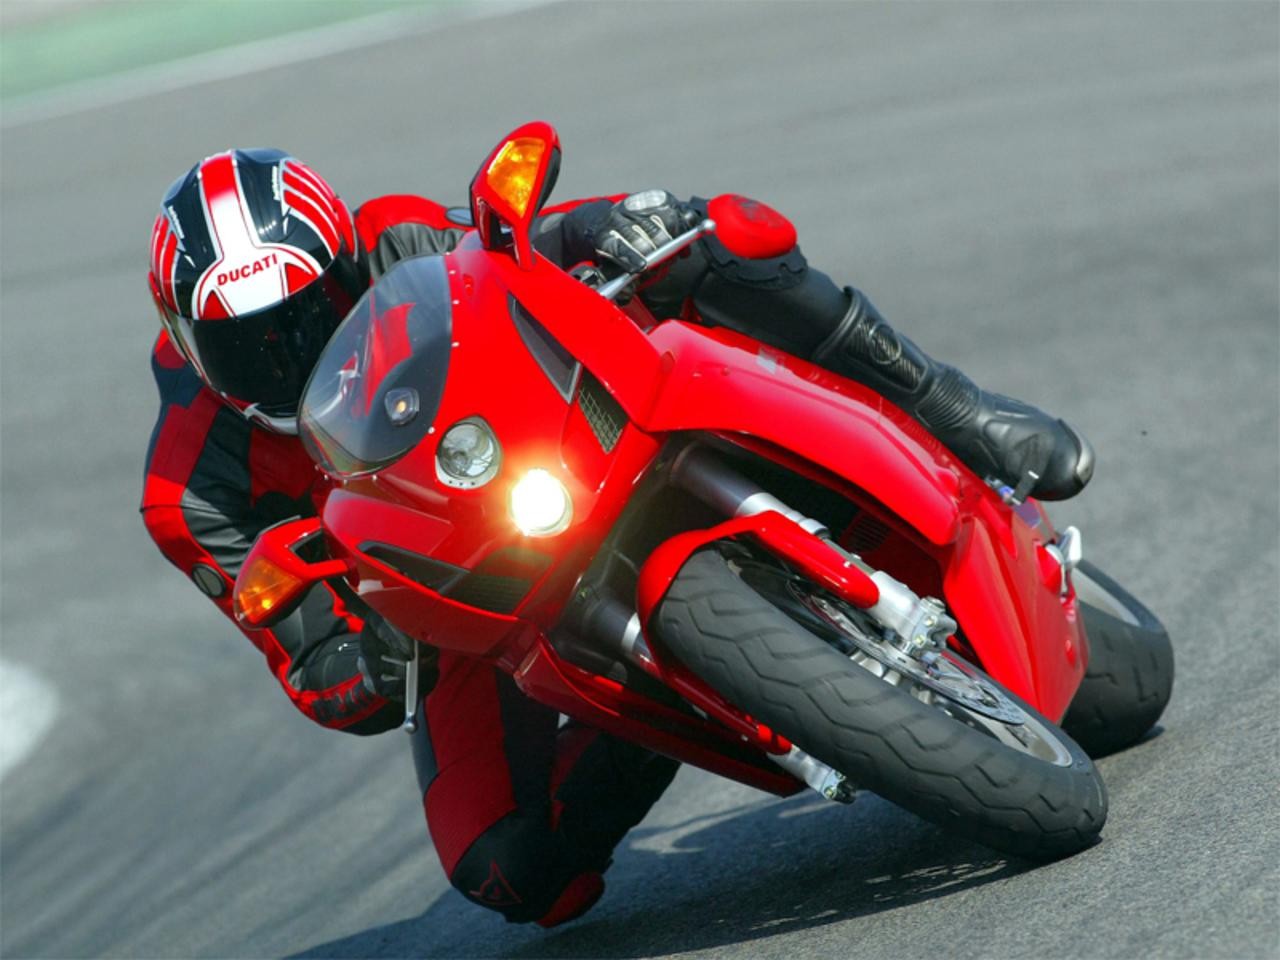 General 1280x960 Ducati motorcycle vehicle Red Motorcycles motorsport racing race tracks 999 Italian motorcycles Volkswagen Group